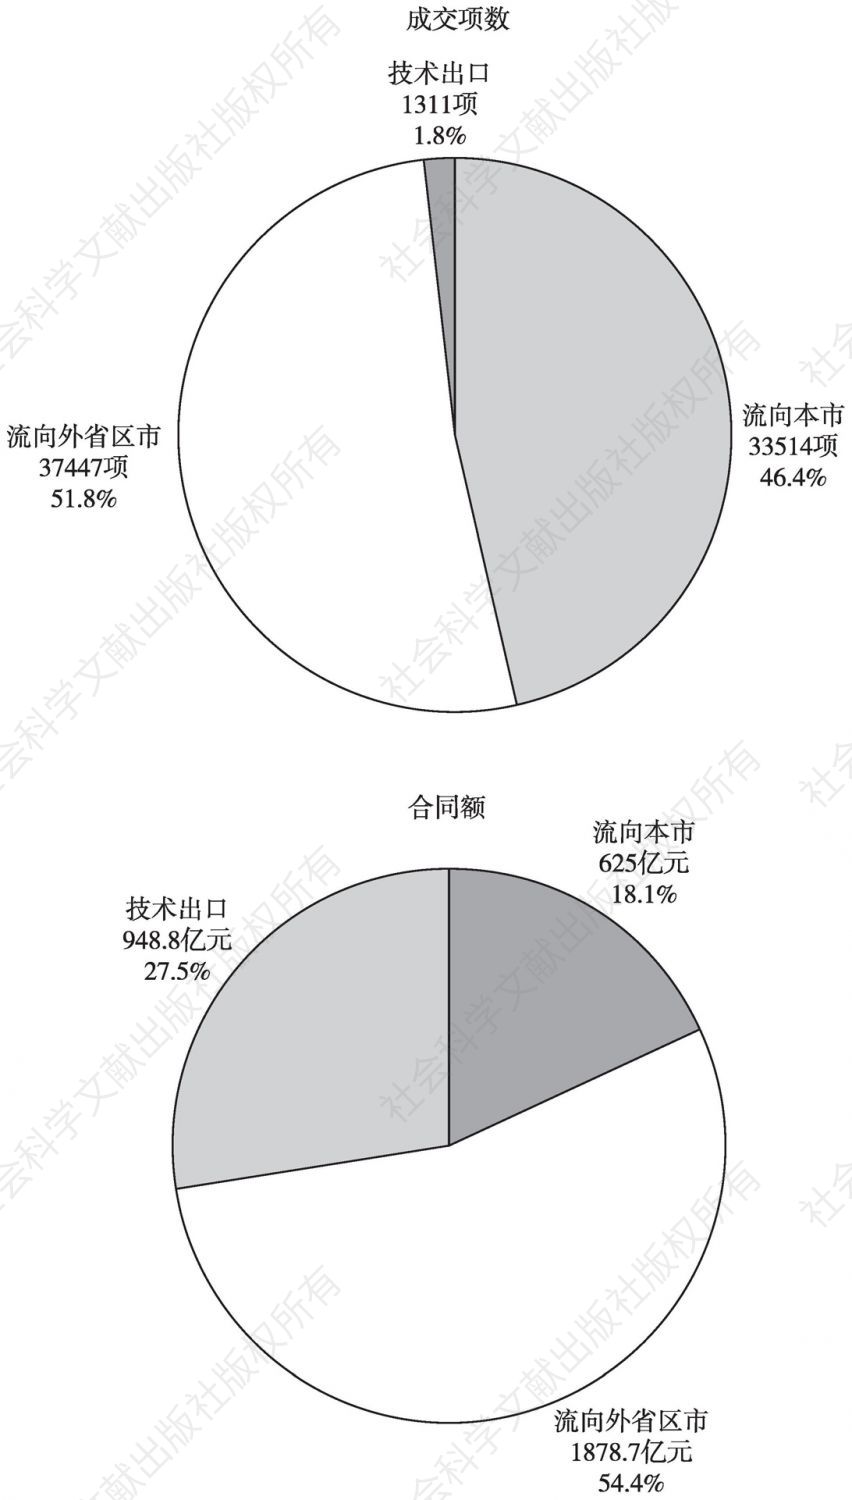 图2 2015年北京技术成果交易流向